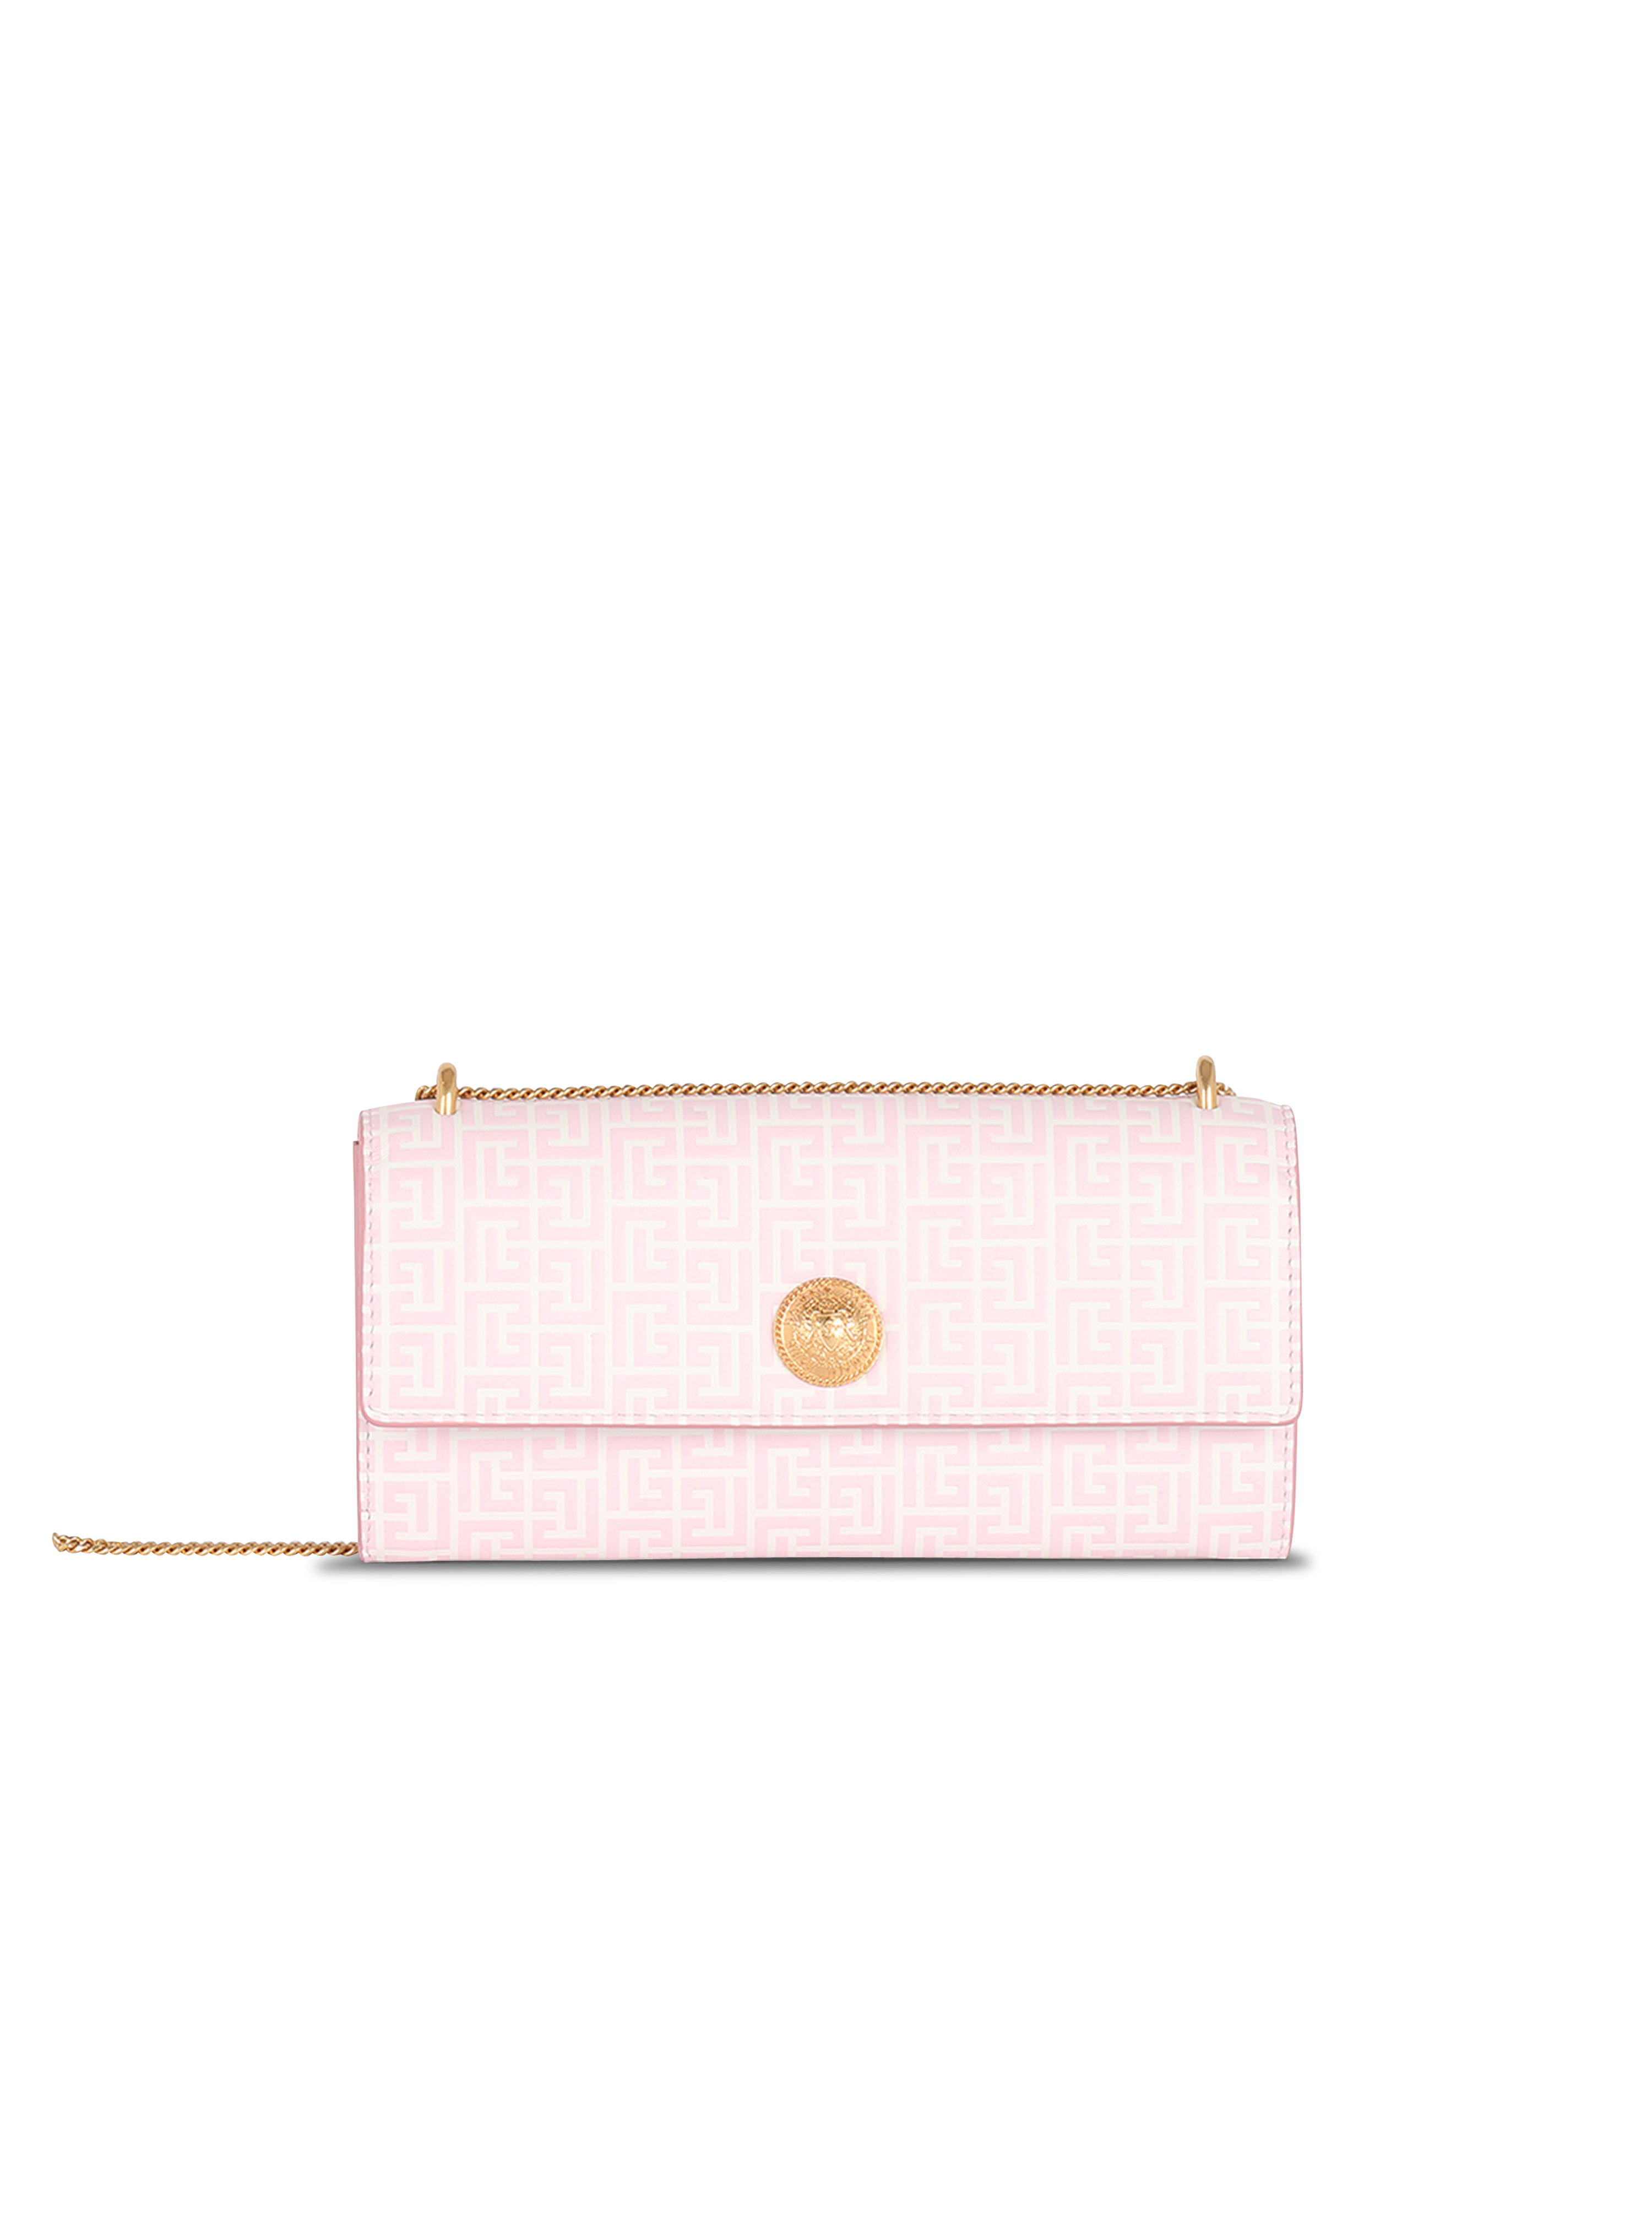 엠보싱 레더 동전 지갑, 핑크색